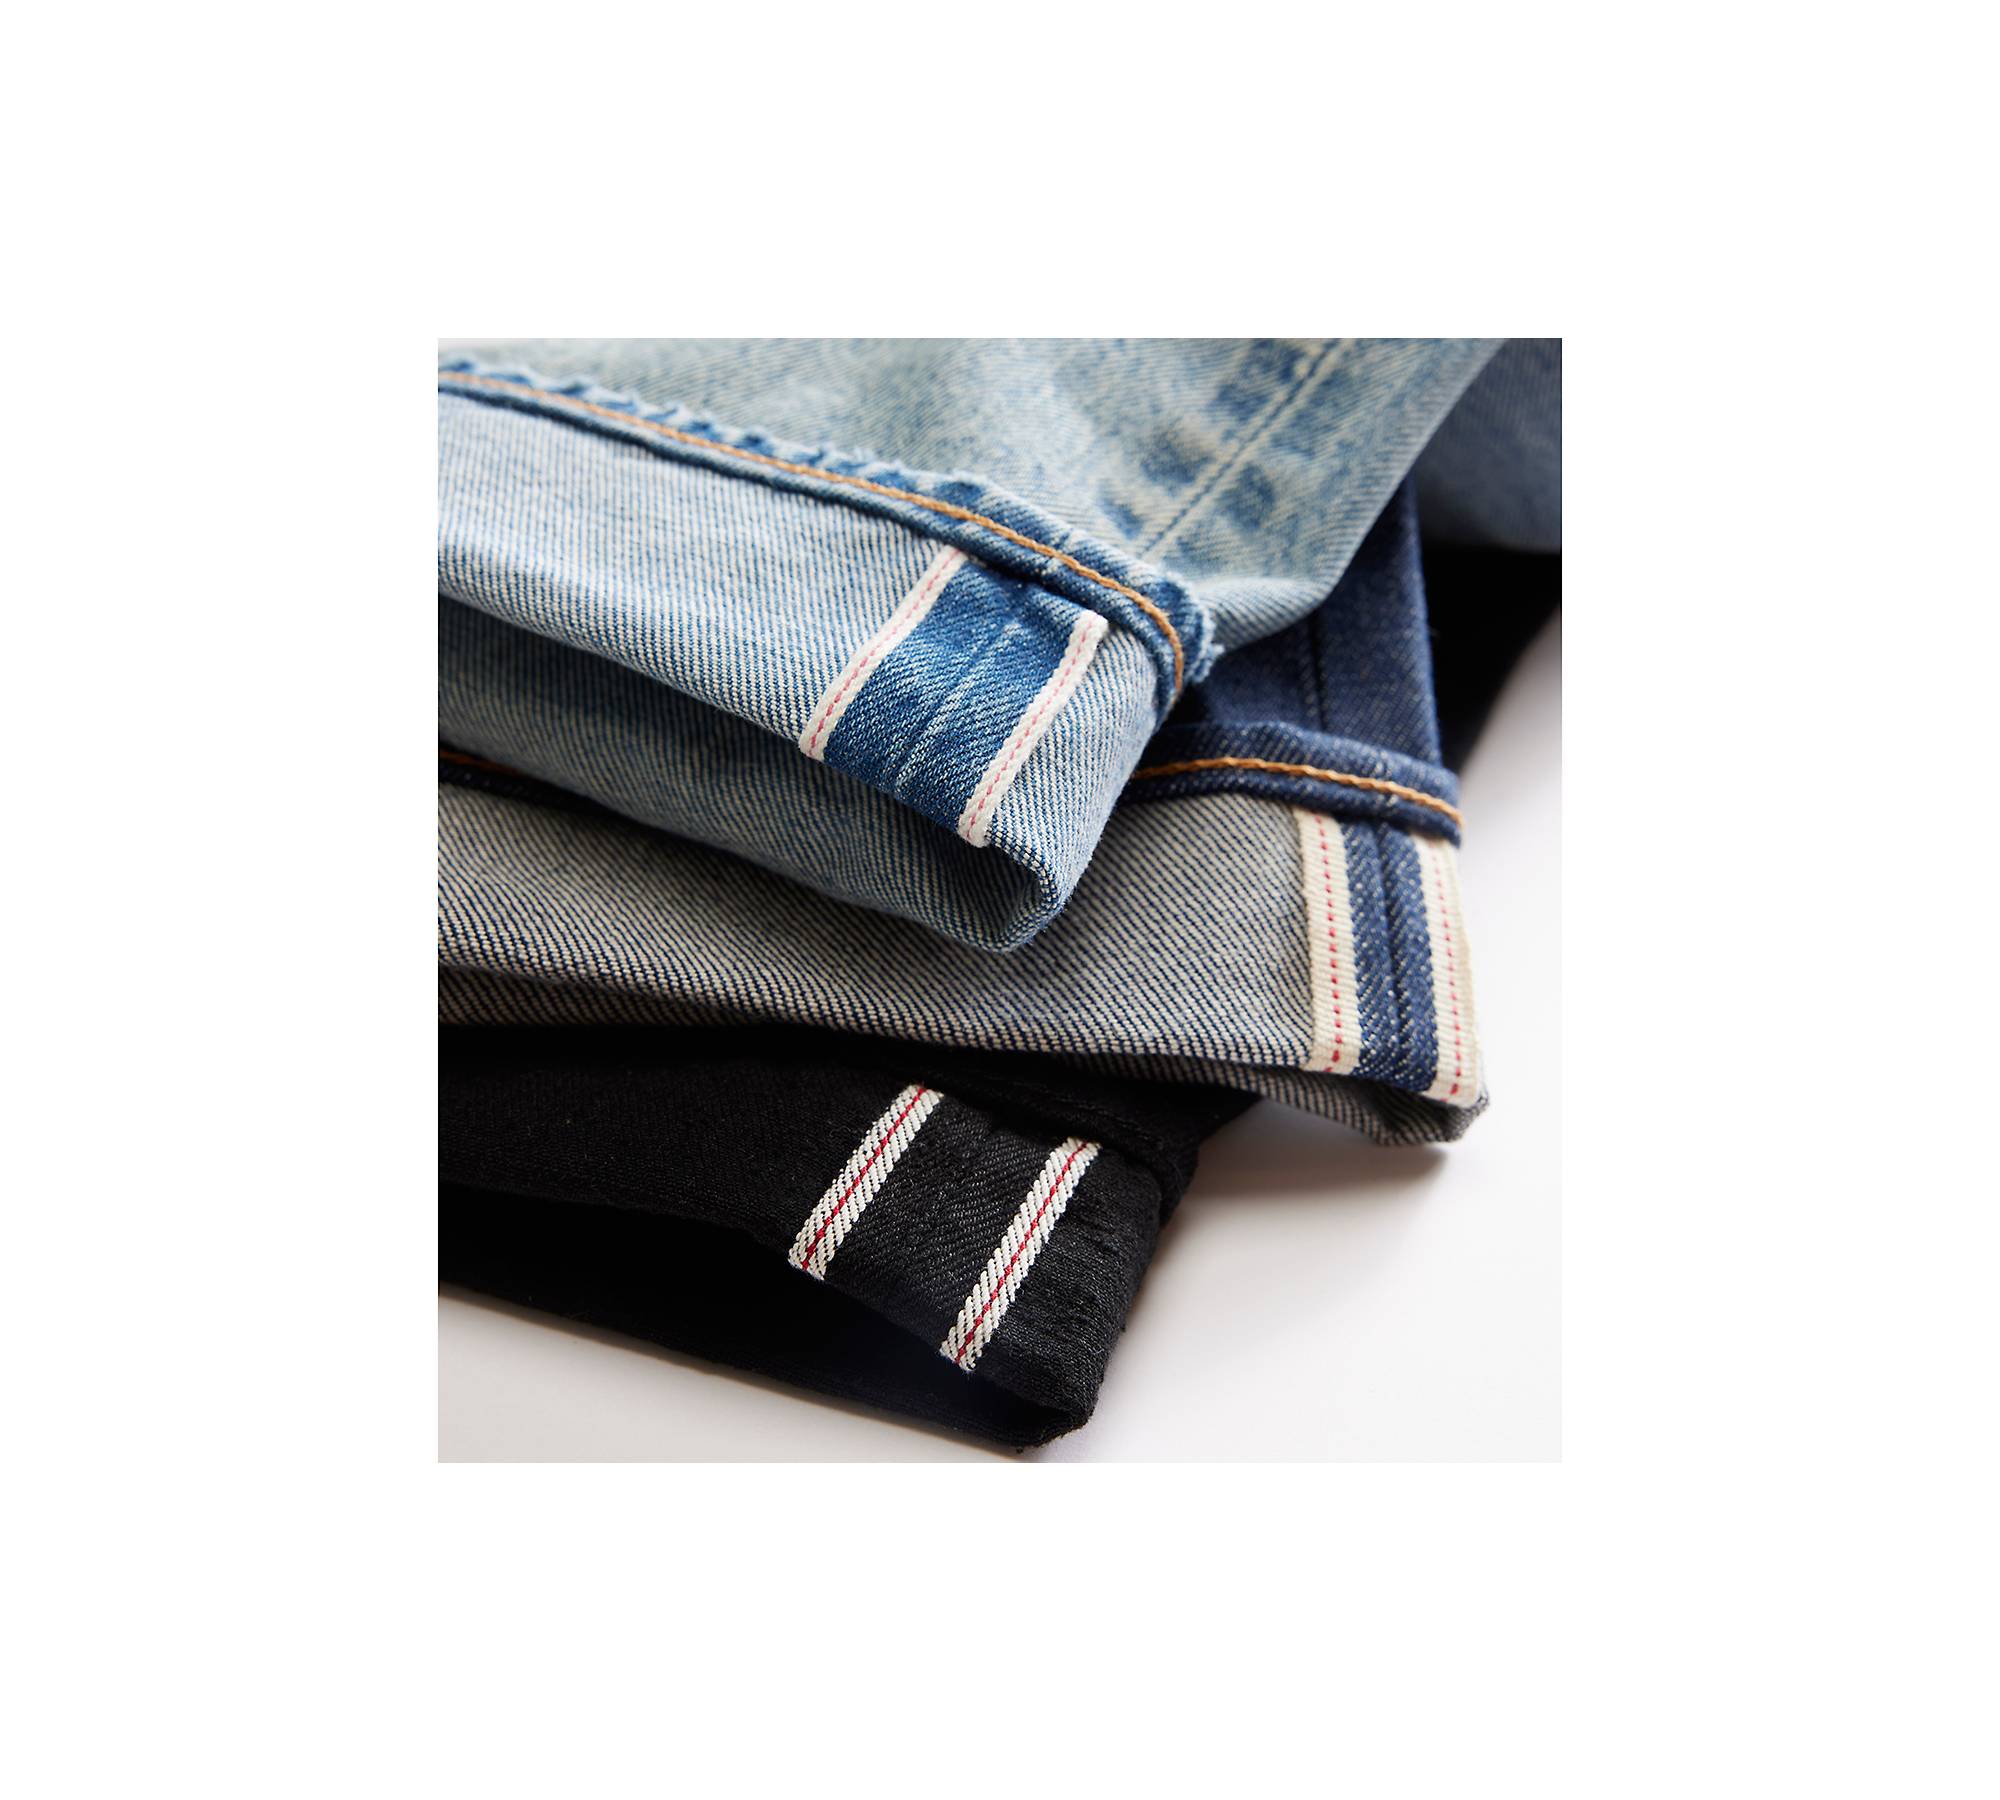 80s 501® Z Selvedge Men's Jeans - Dark Wash | Levi's® US